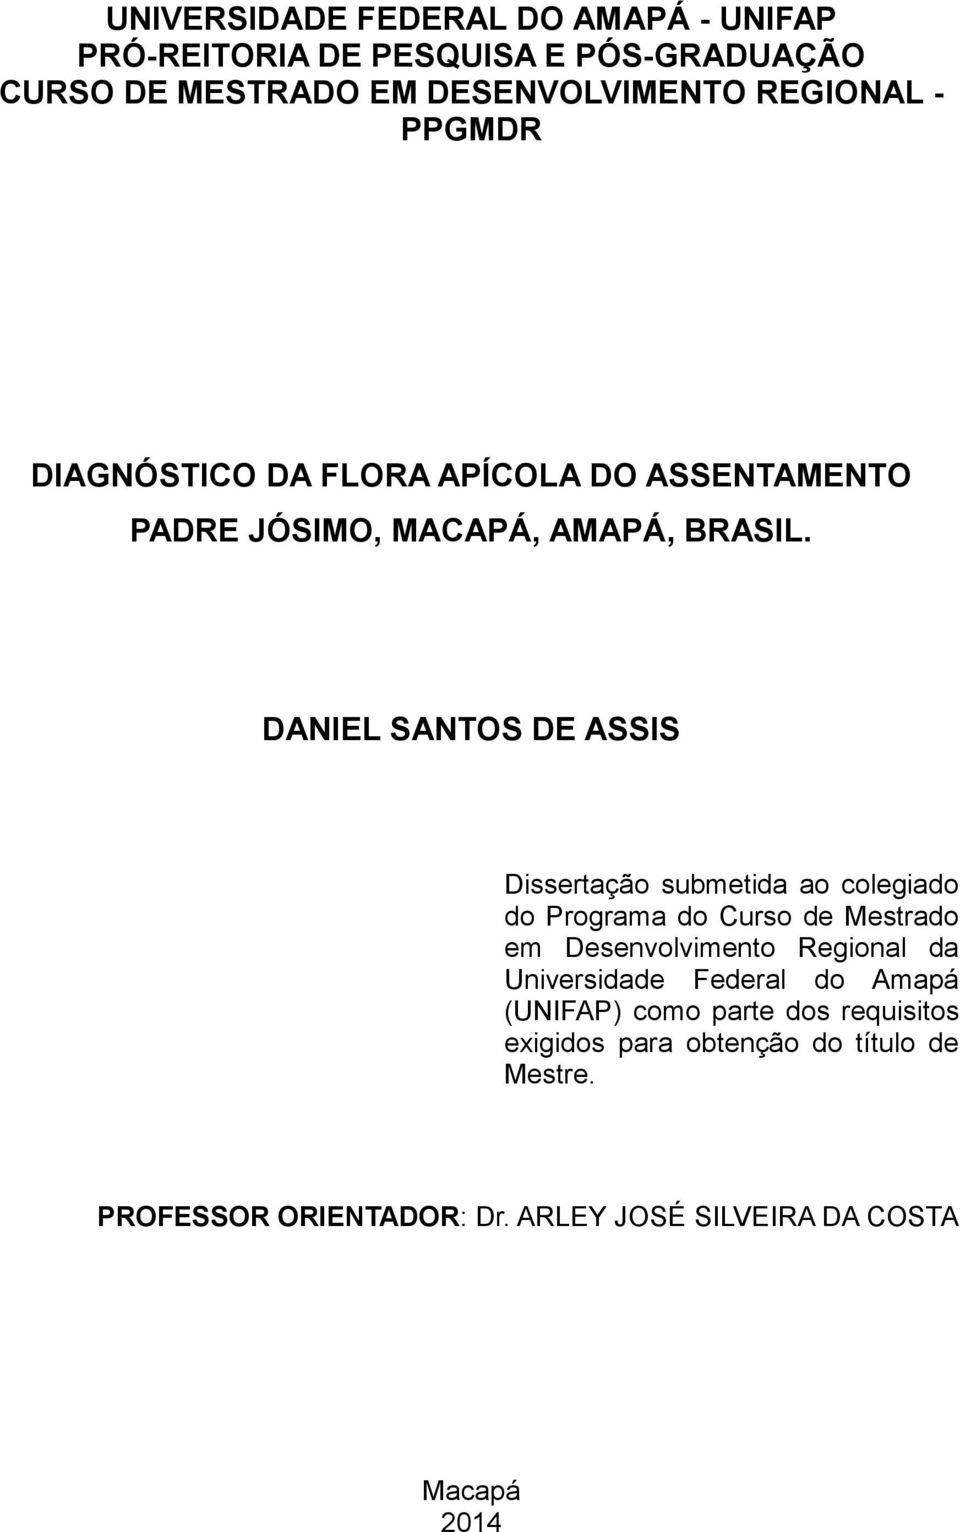 DANIEL SANTOS DE ASSIS Dissertação submetida ao colegiado do Programa do Curso de Mestrado em Desenvolvimento Regional da